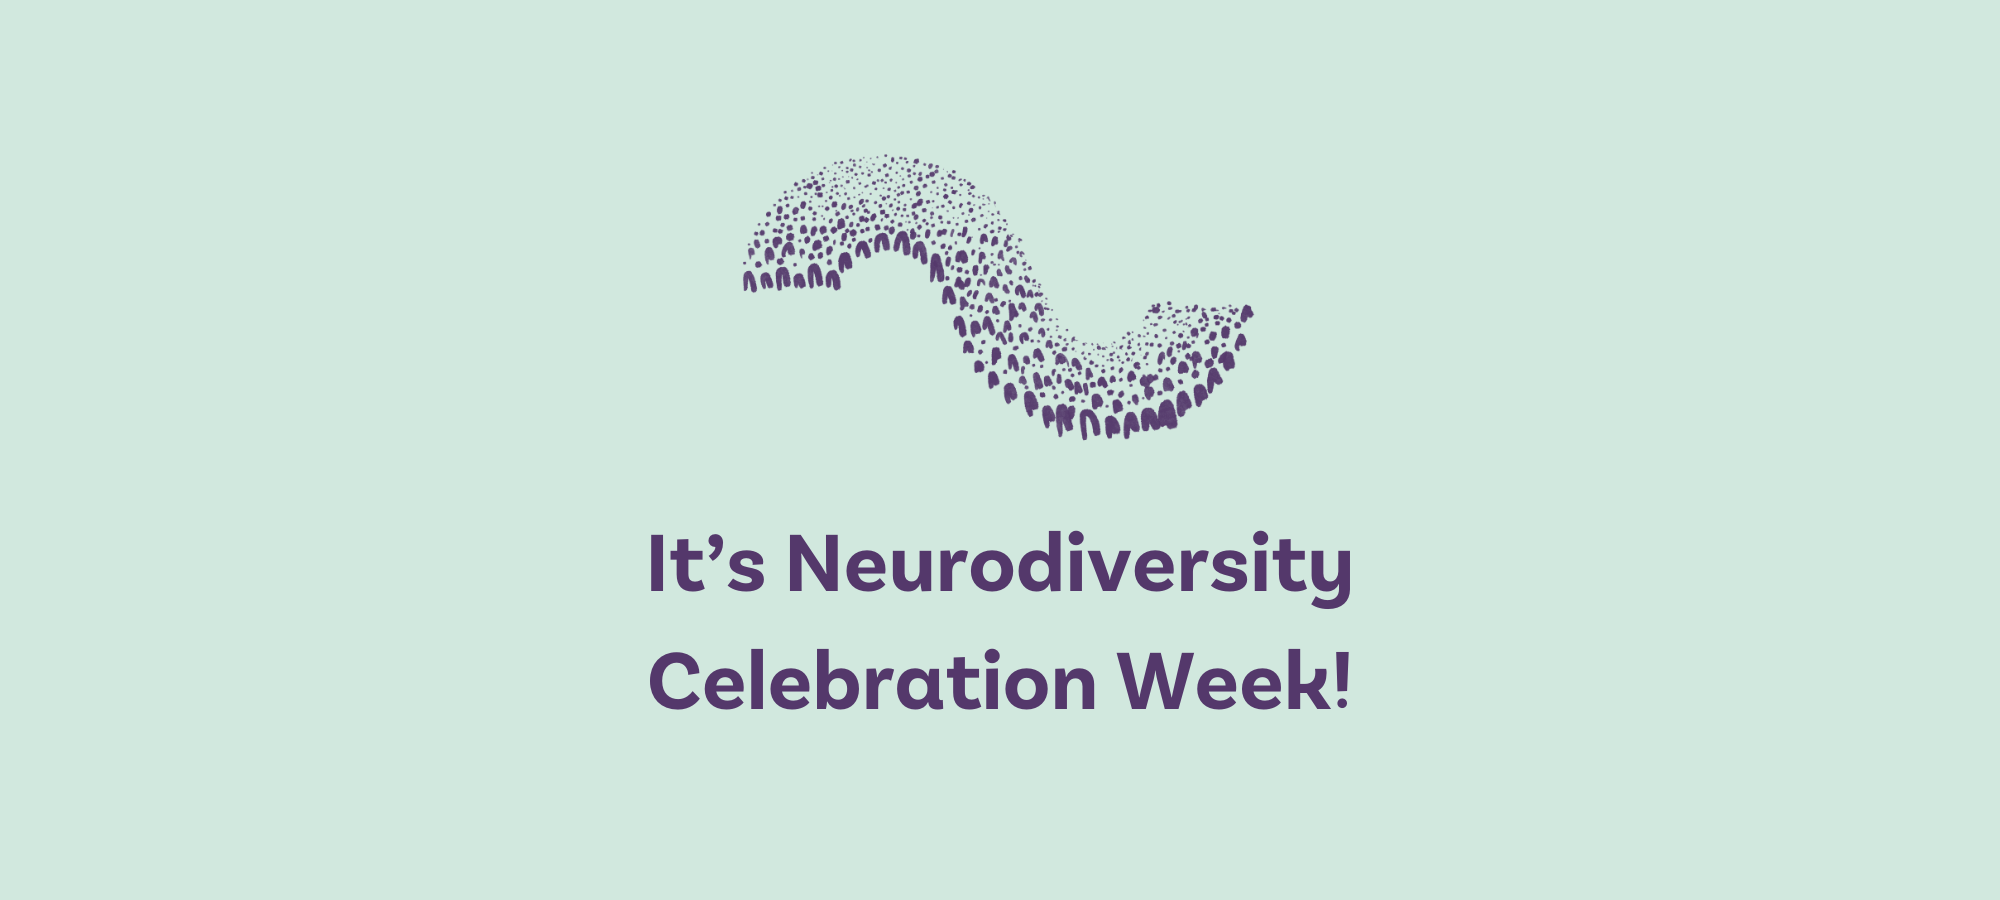 It's Neurodiversity Celebration Week!